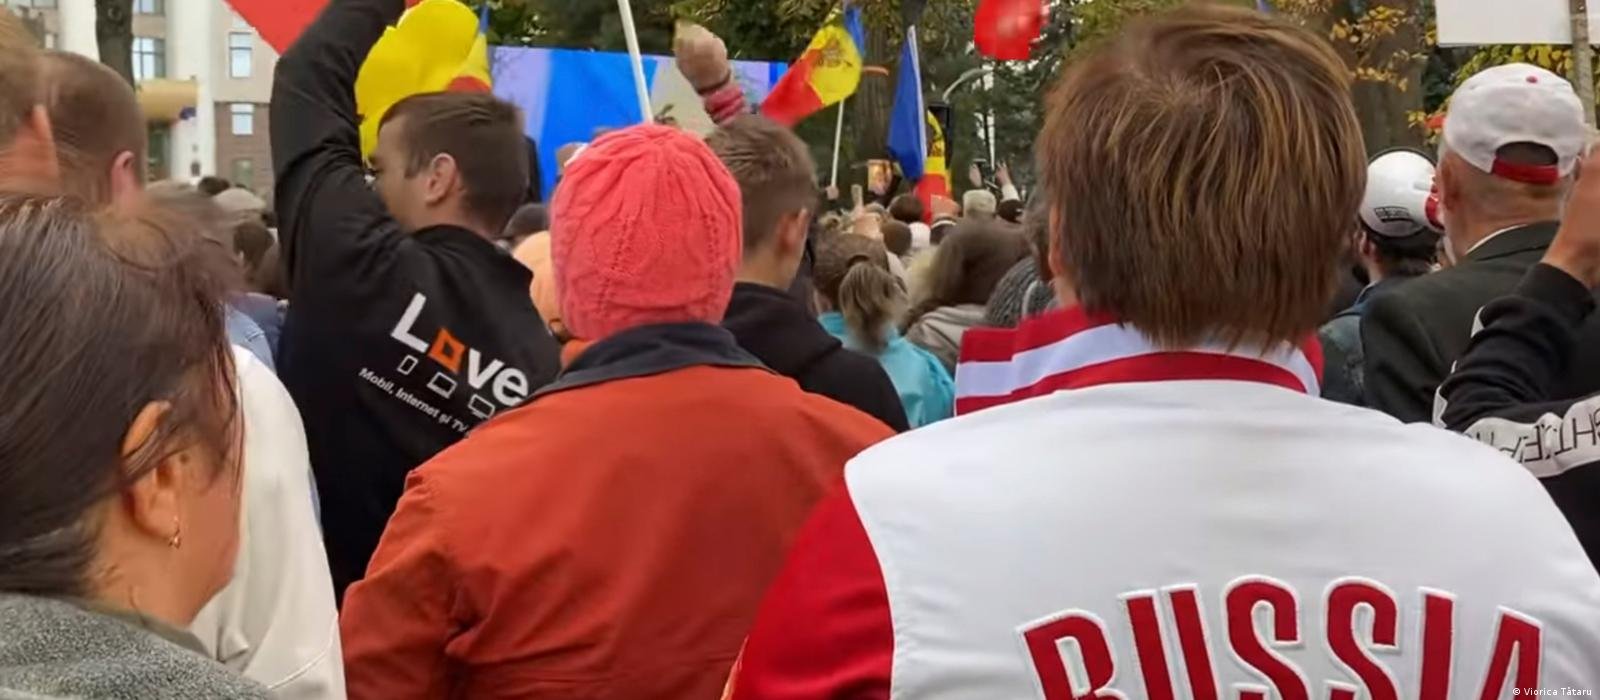  Serviciile secrete din Rusia organizează proteste în Europa. Cum vor să influențeze opinia publică